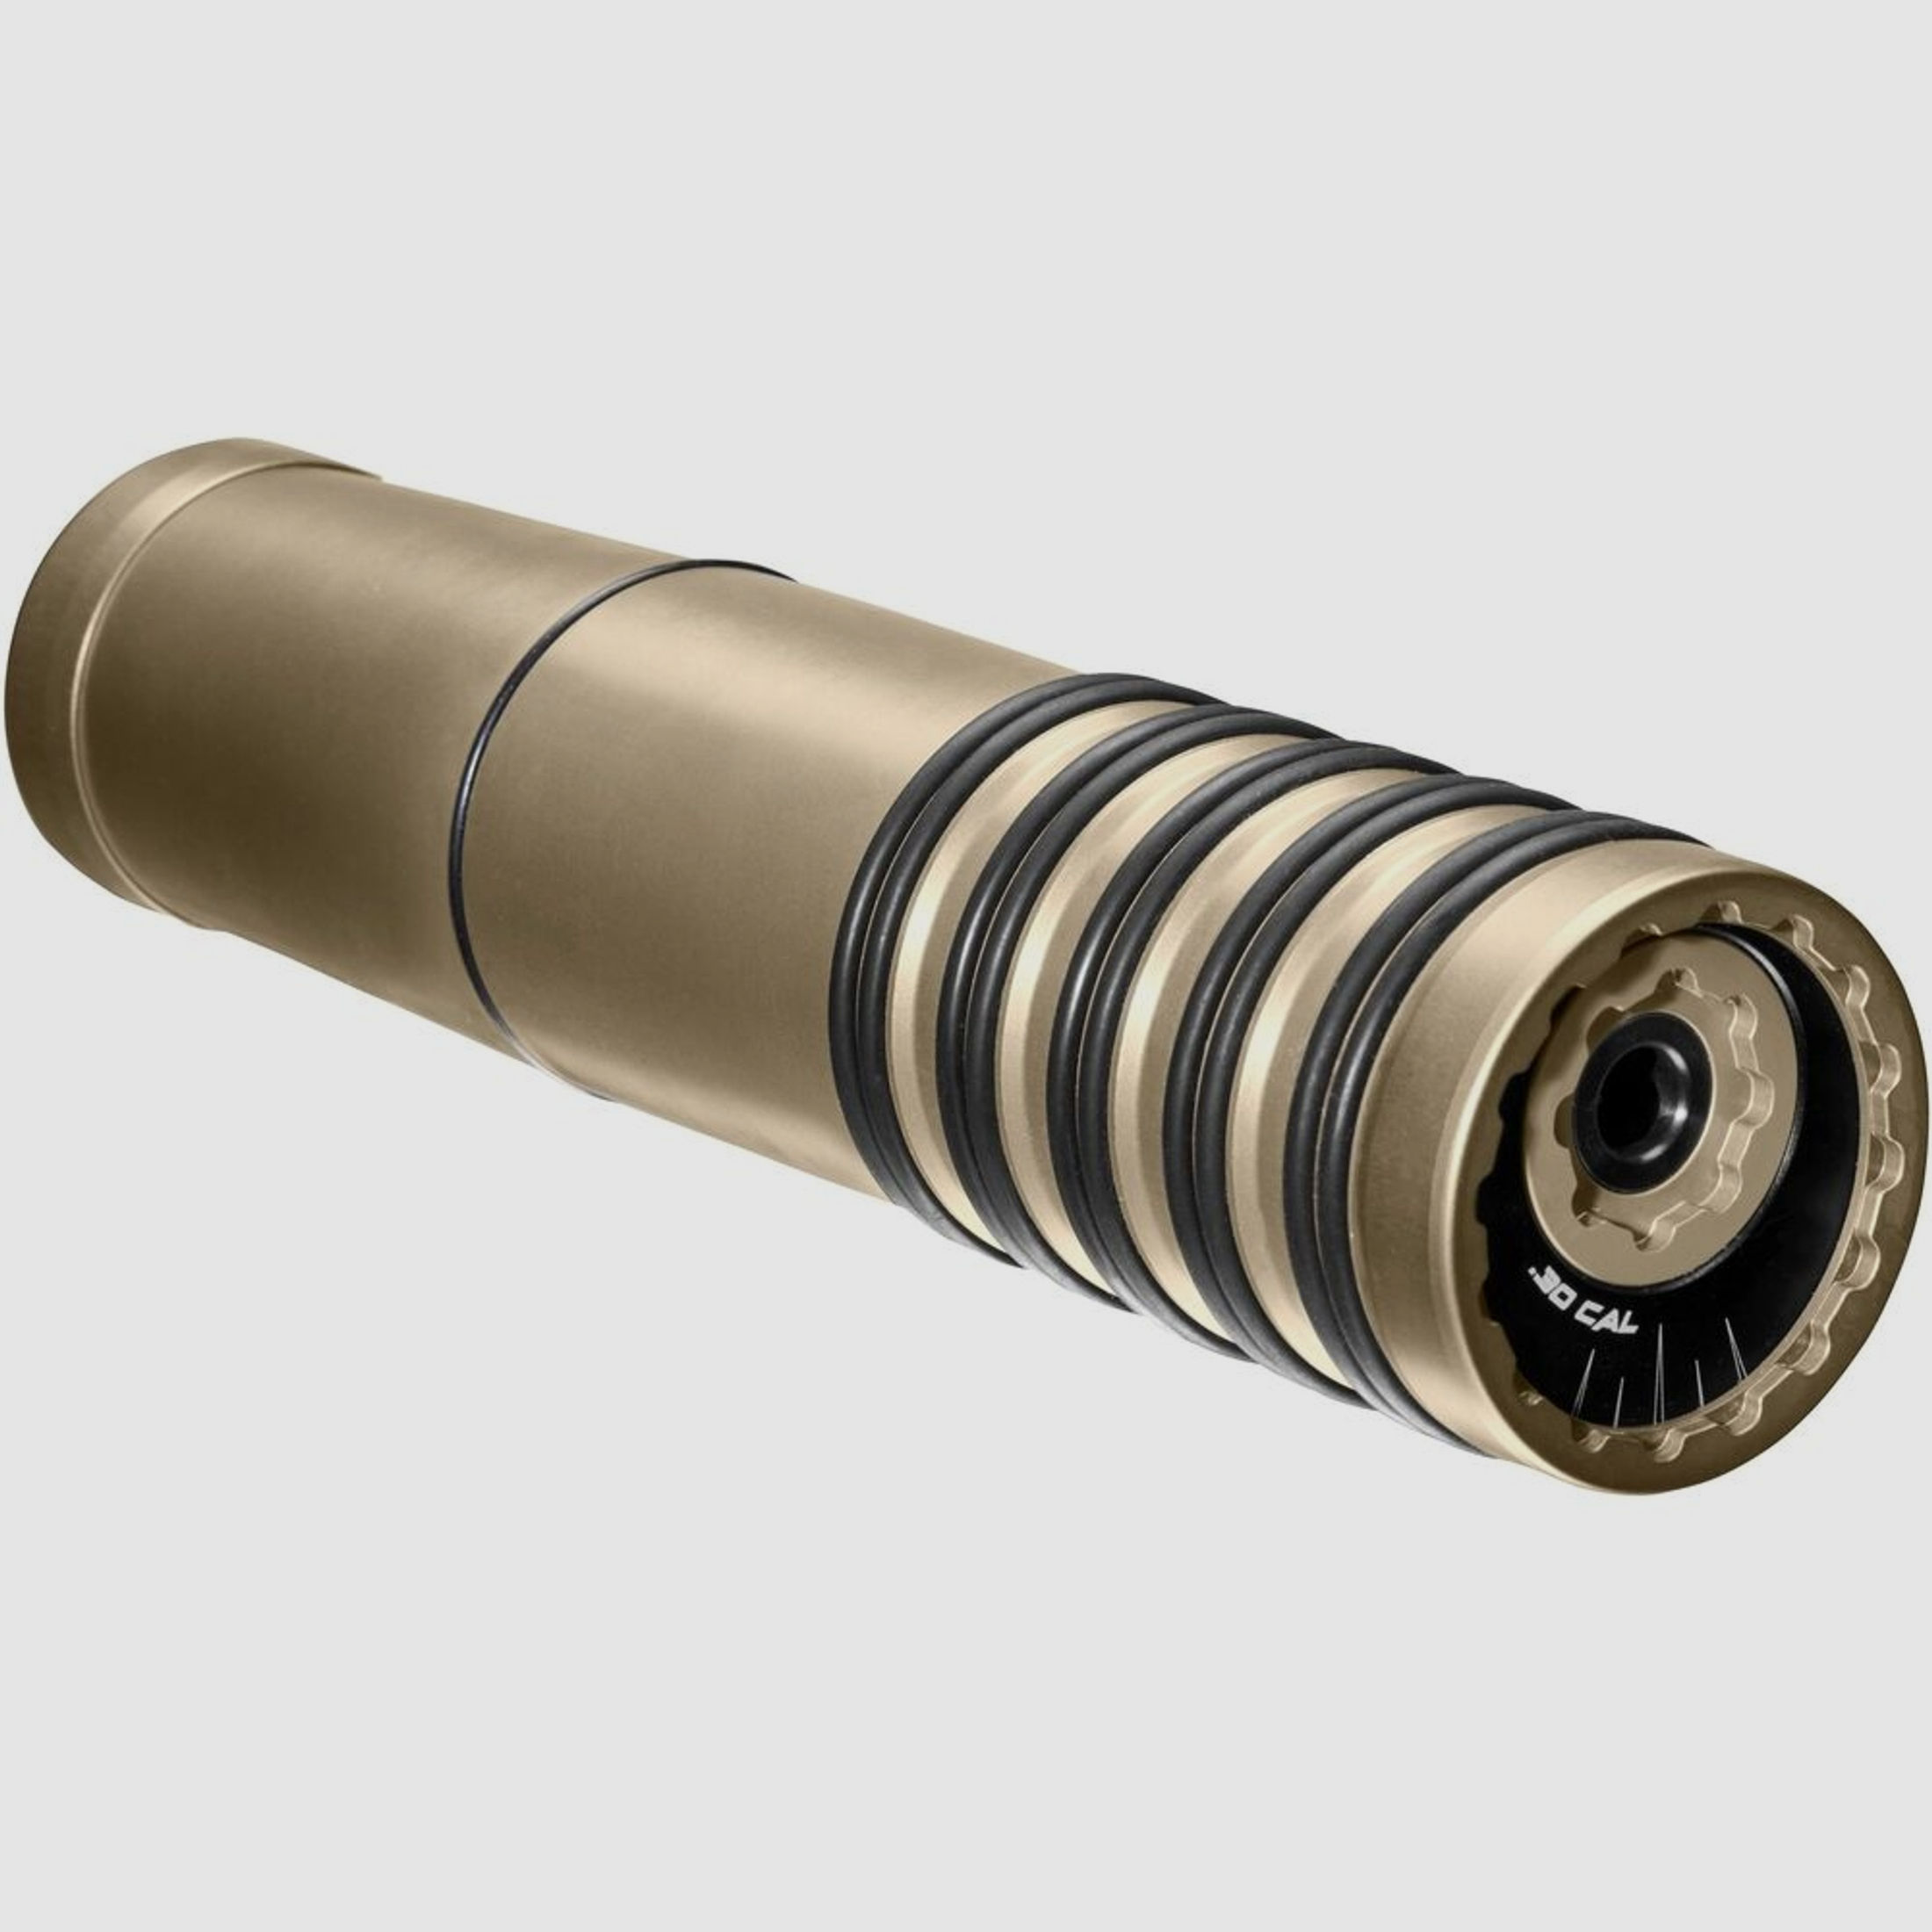 Krontec	 Schalldämpfer OR-50 - Kaliber .323 / 8 mm Gewindeart 1/2x28 UNF